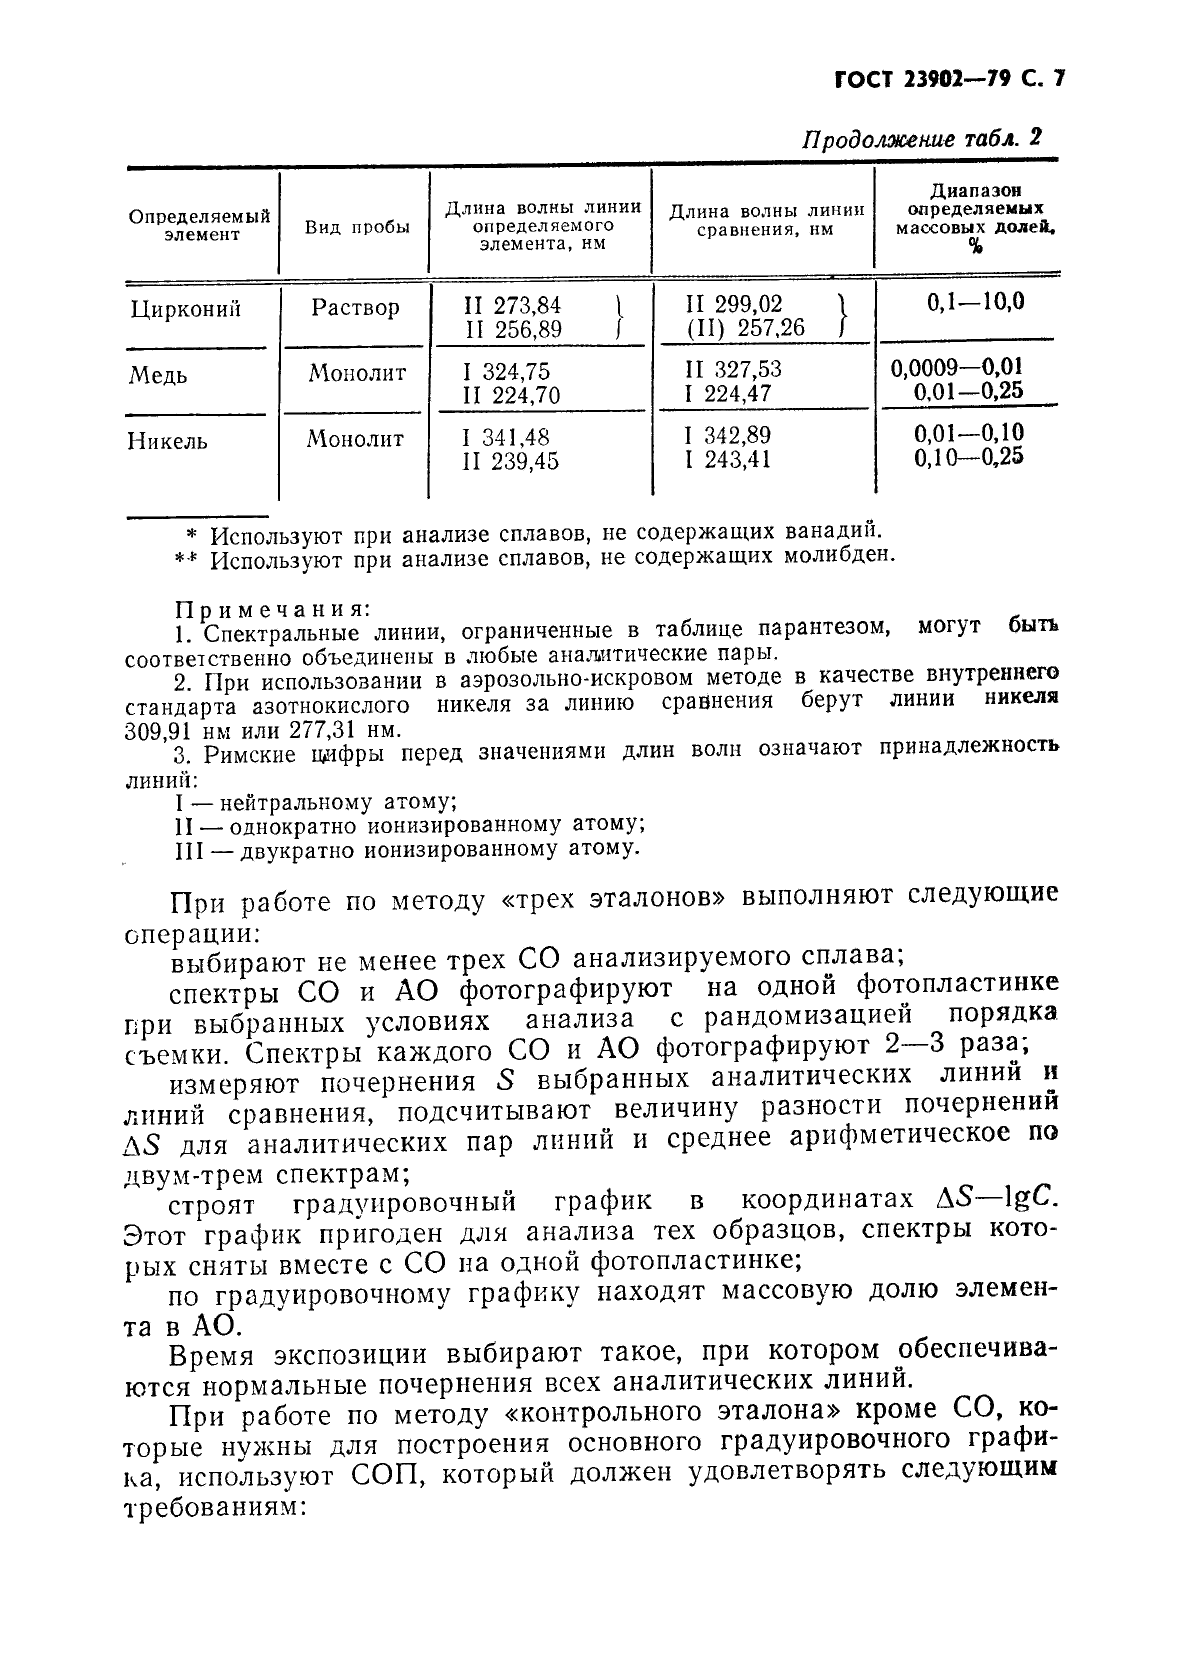 ГОСТ 23902-79 Сплавы титановые. Методы спектрального анализа (фото 8 из 25)